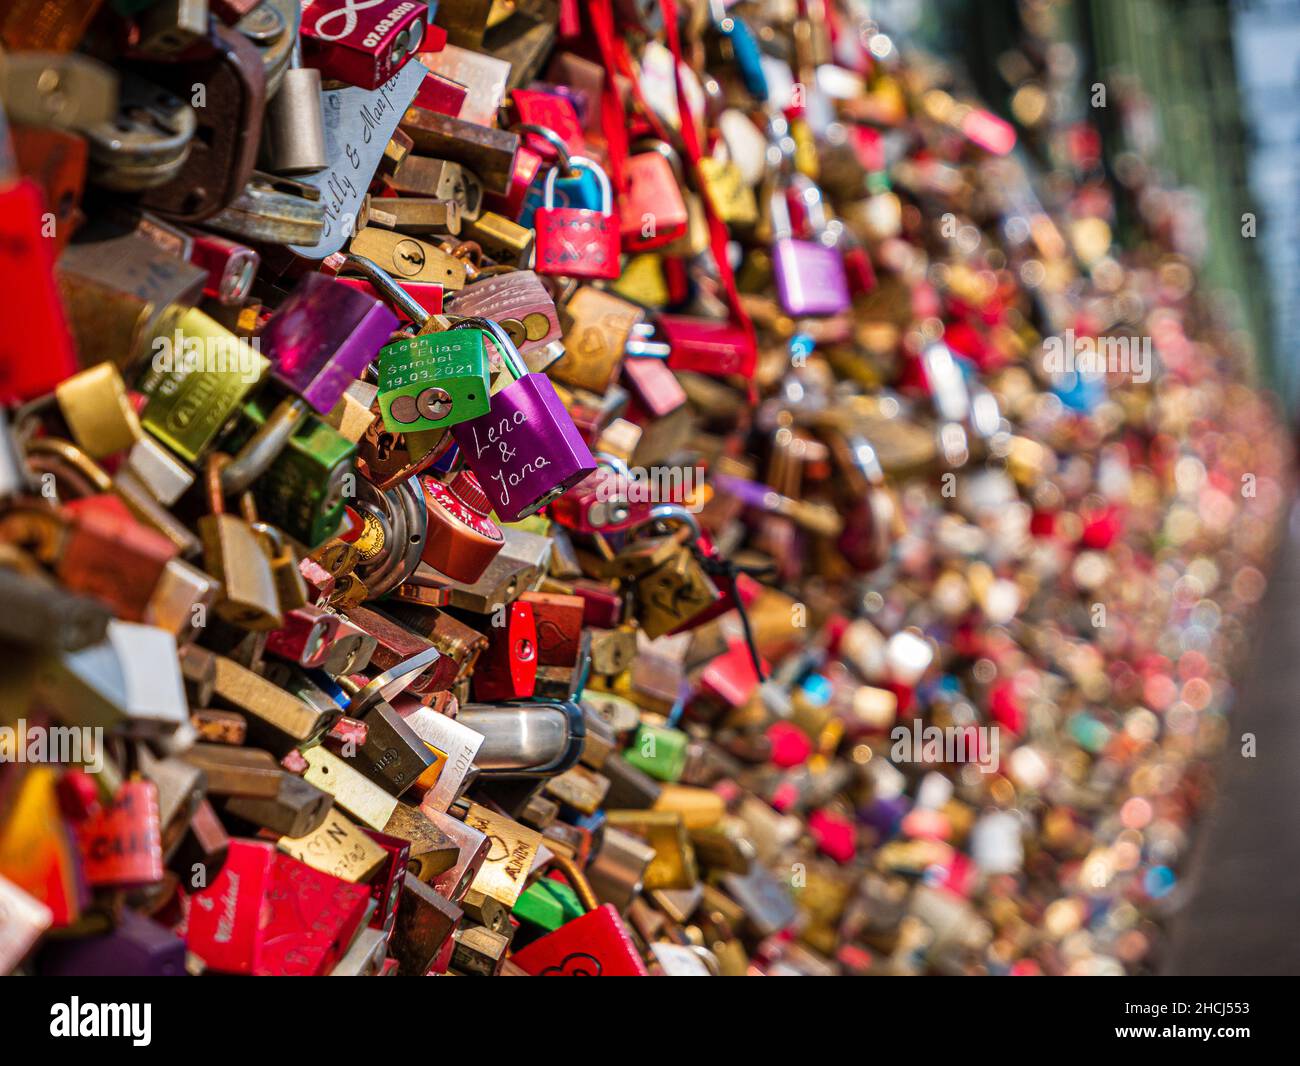 Lena & Jana, Love locks on a bridge Stock Photo